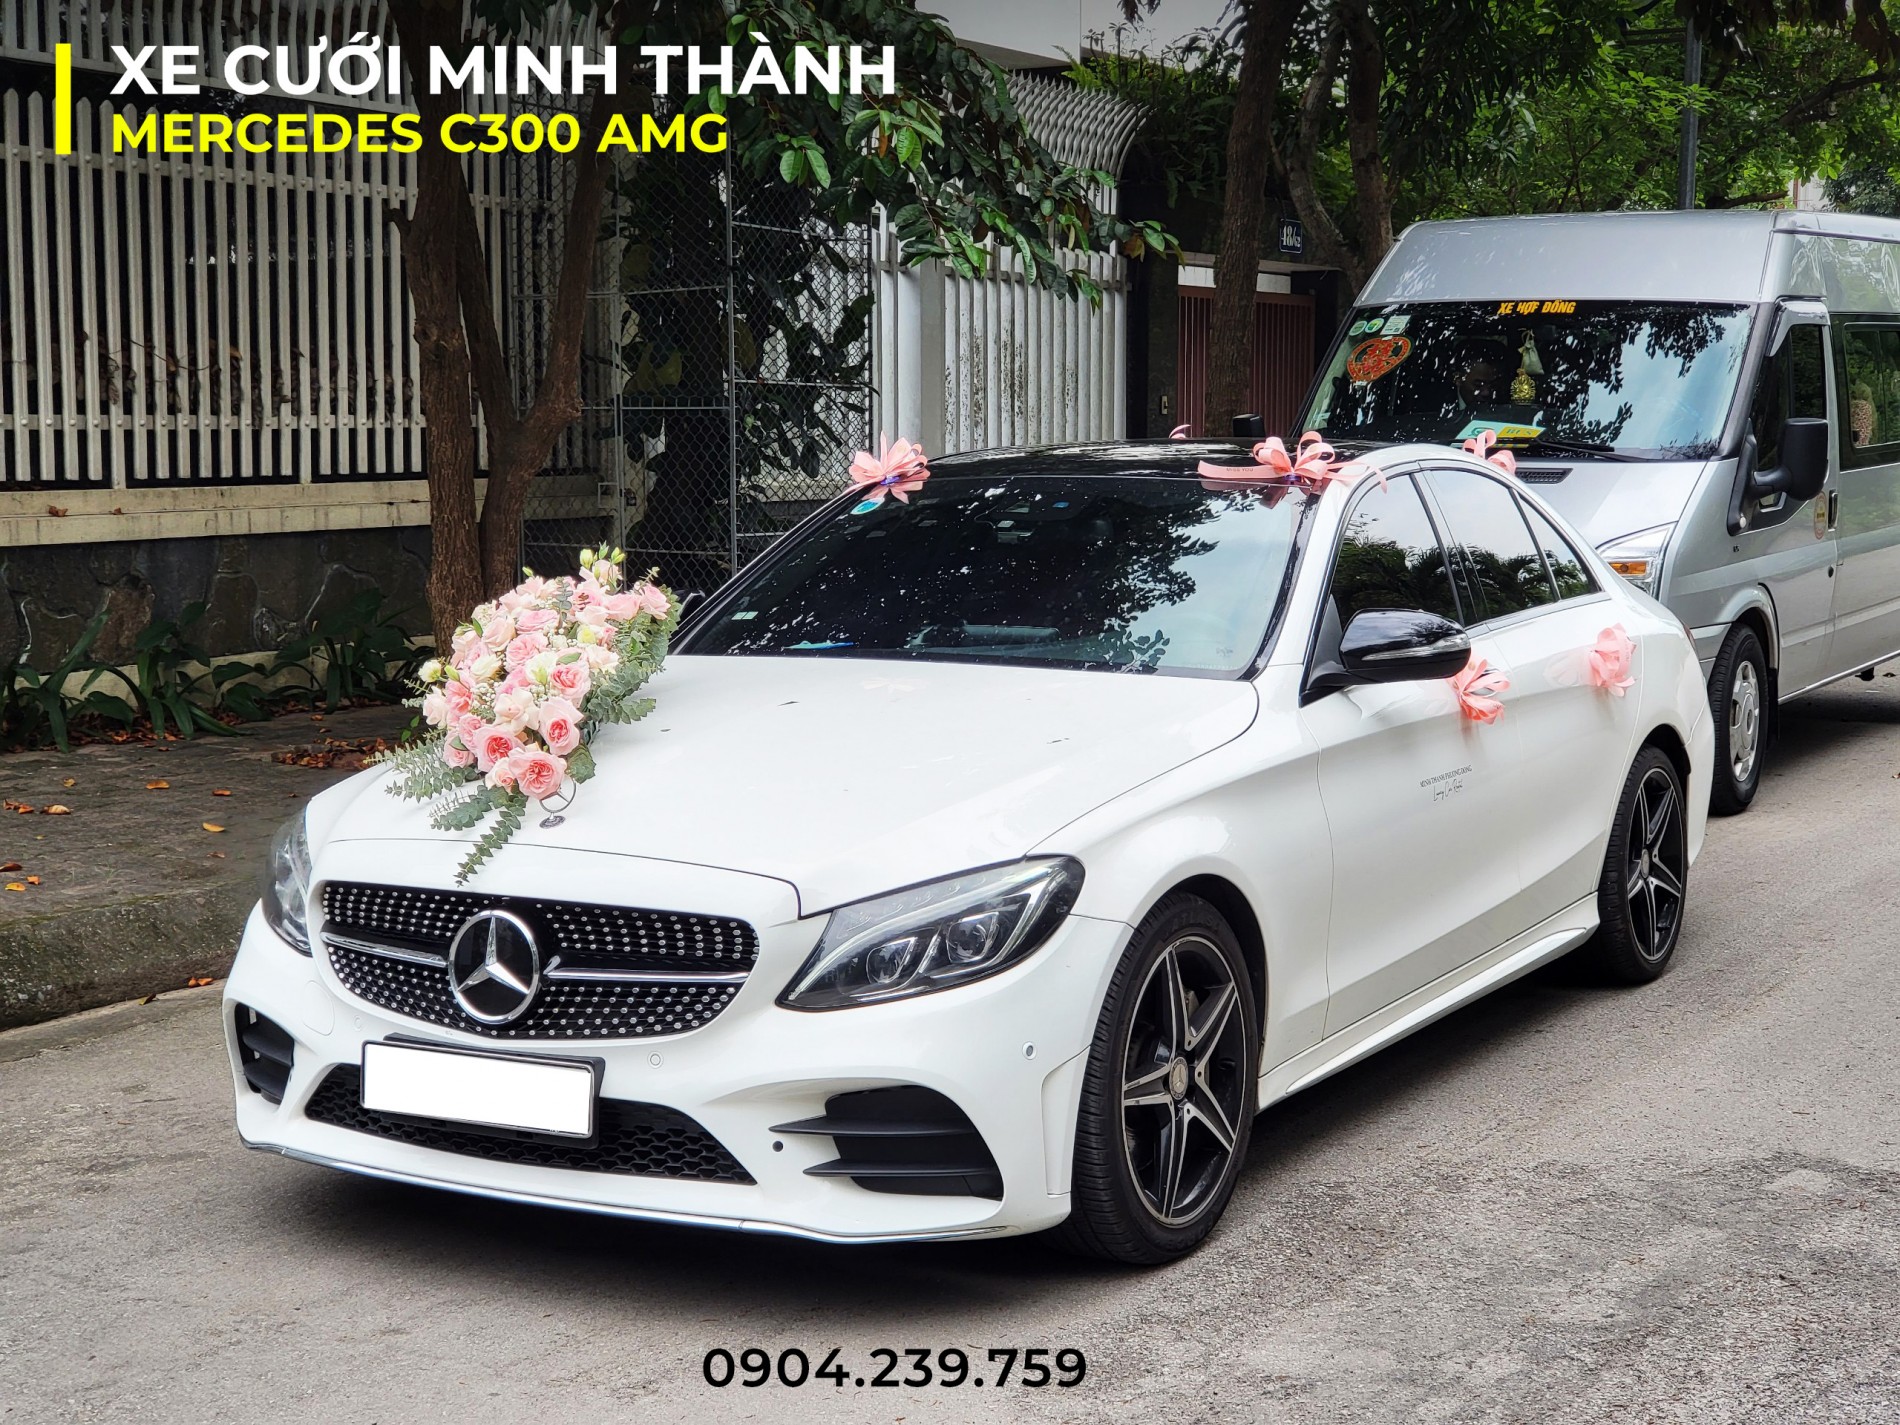 Cho thue xe cuoi Mercedes C300 tai Hai Phong